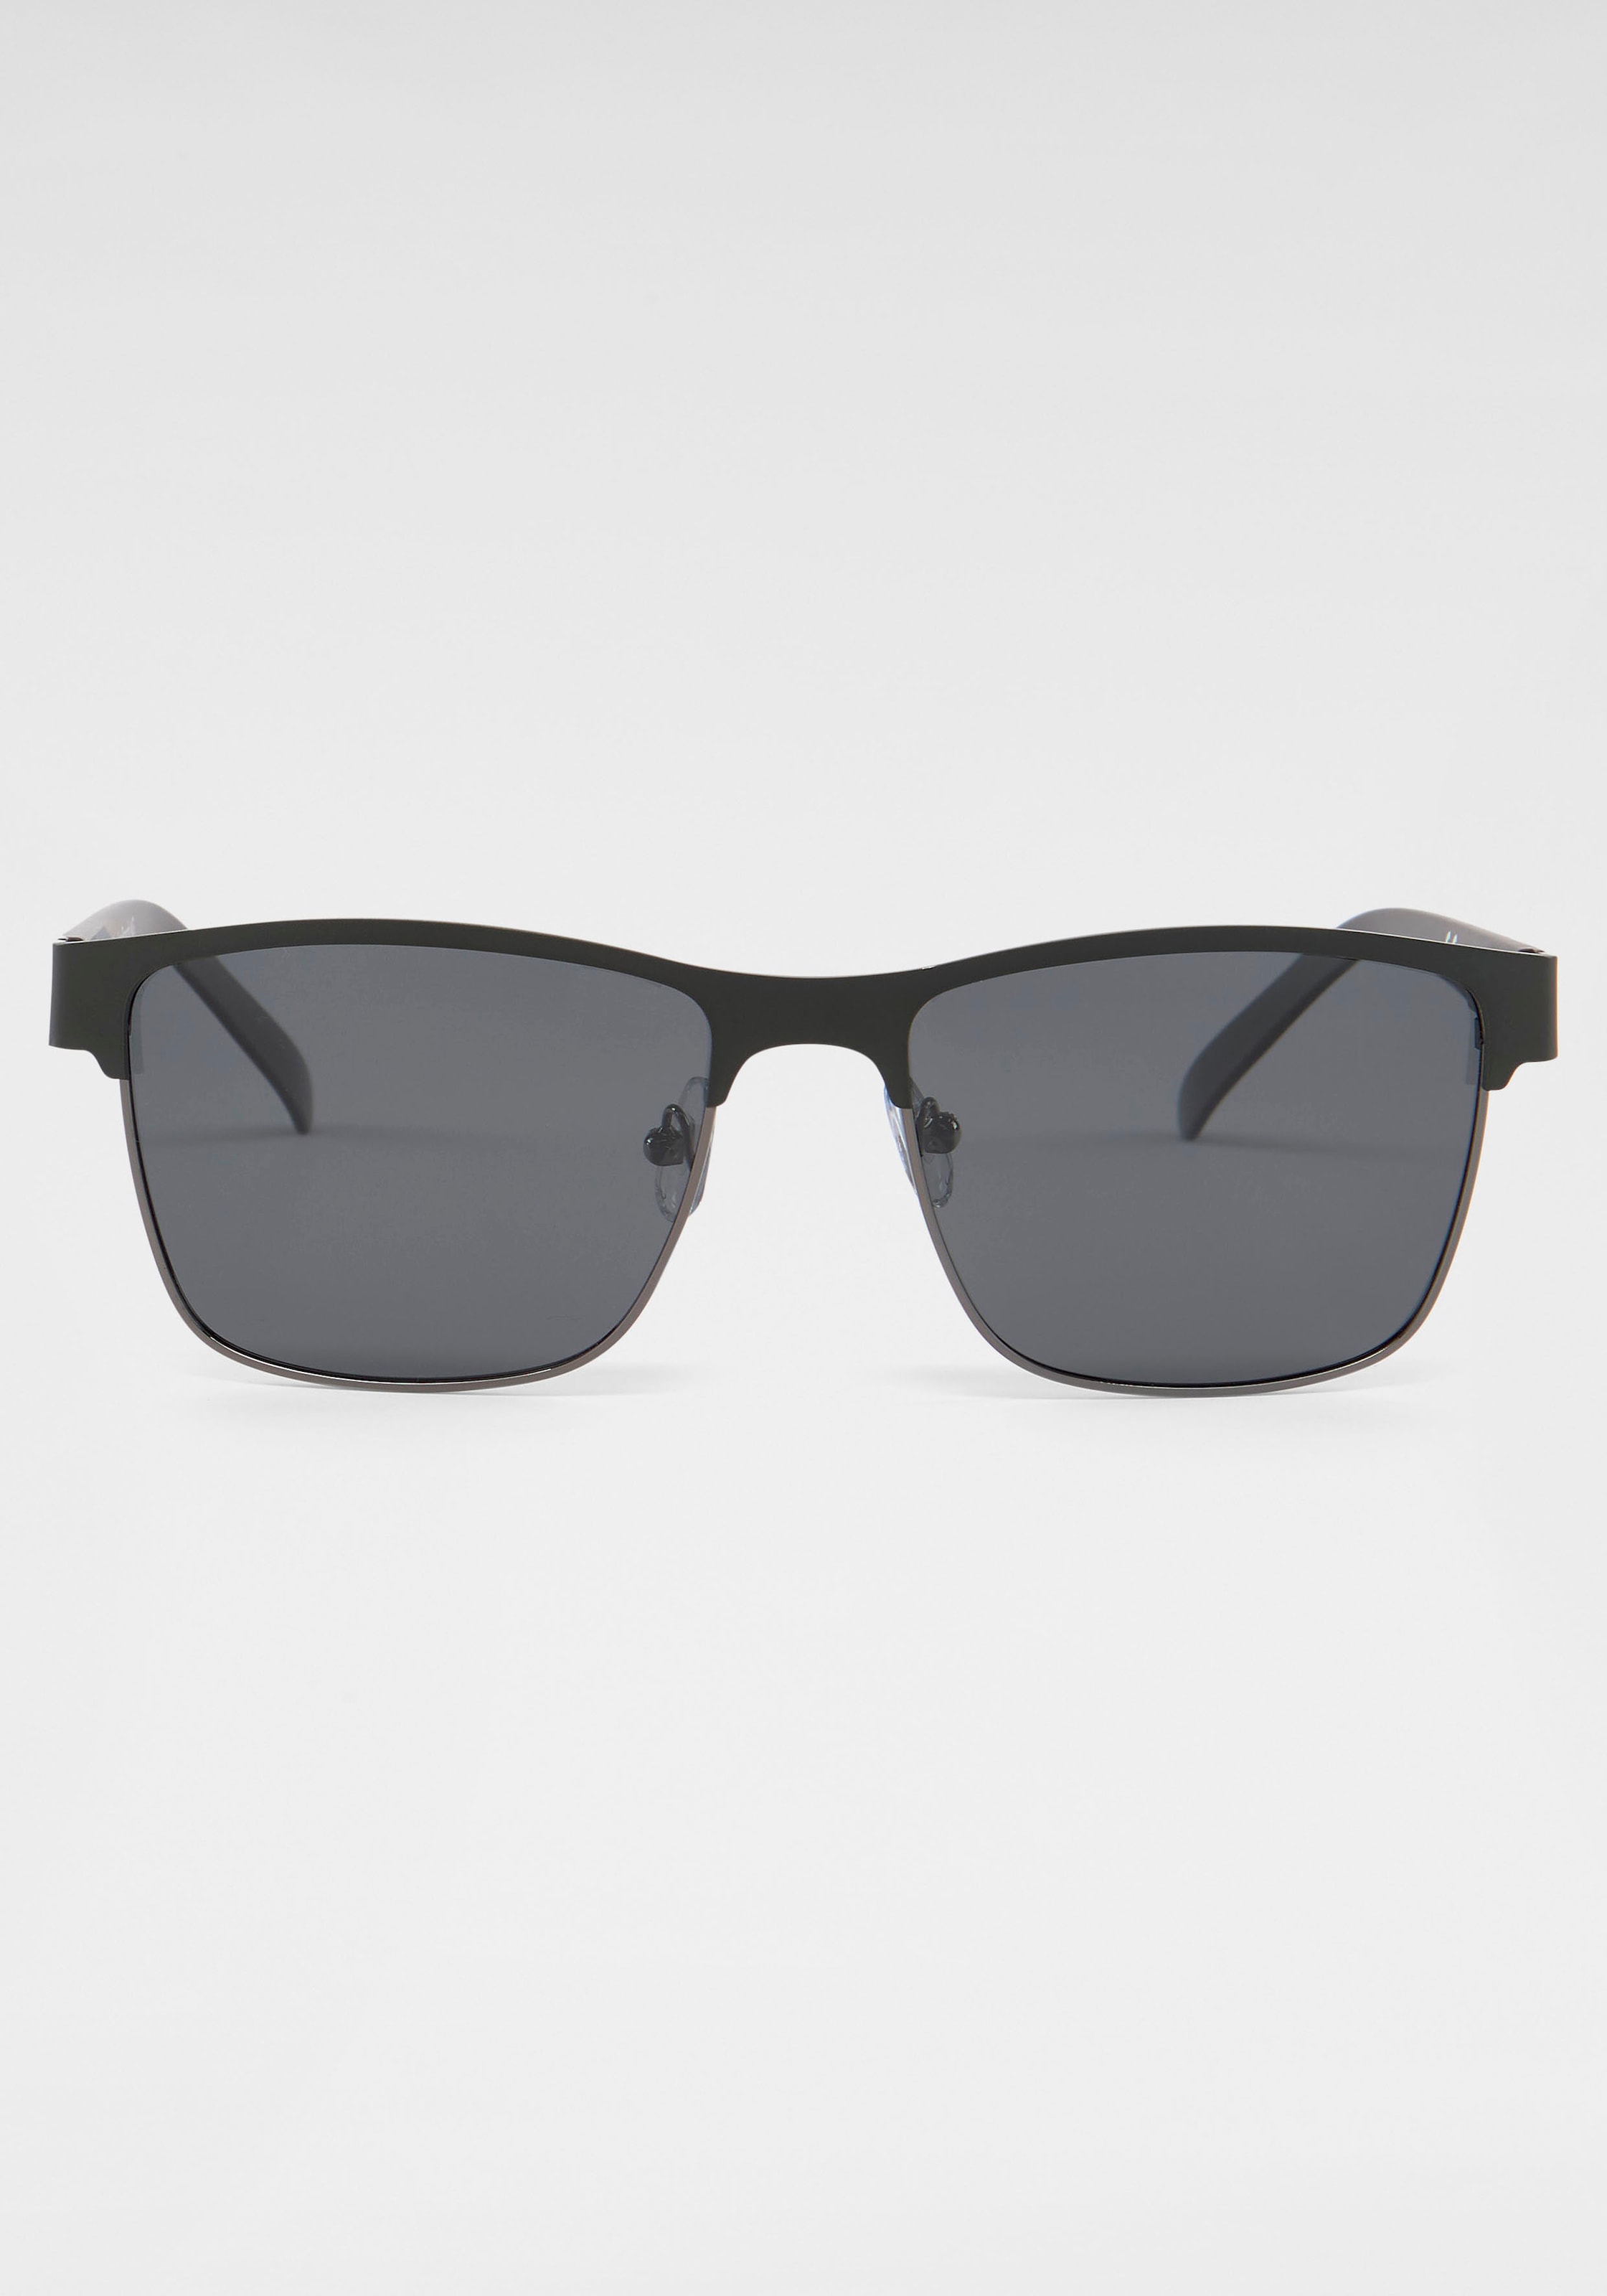 Feel Freedom bestellen 66 the für BAUR Sonnenbrille | ROUTE Eyewear